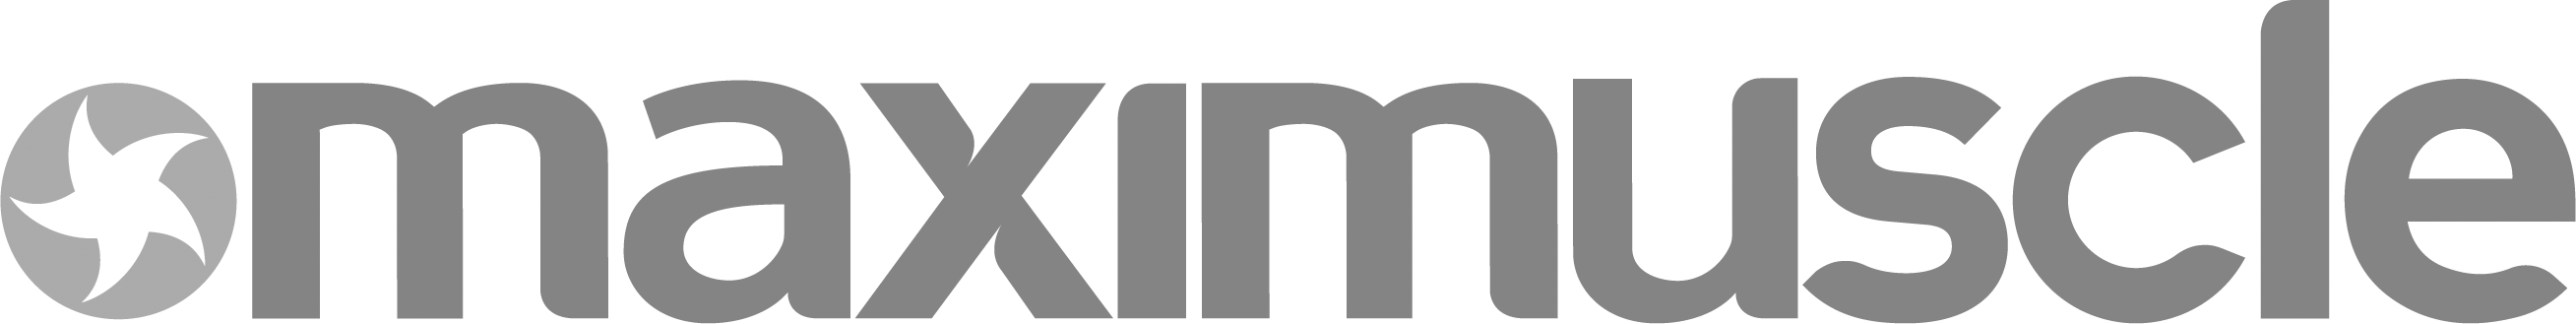 maximuscle logo